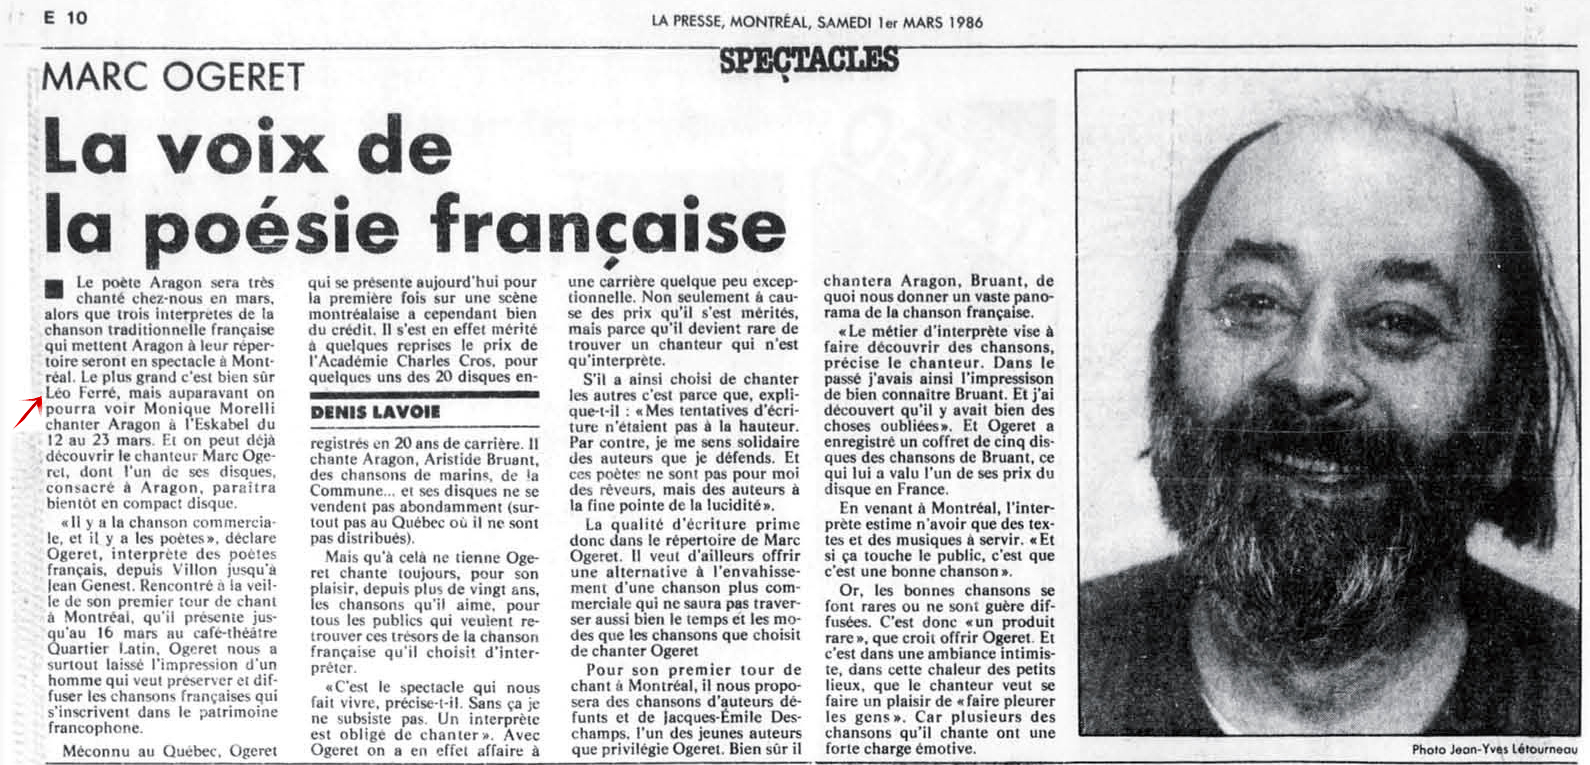 Léo Ferré - La Presse, 1 mars 1986, E. Arts et spectacles